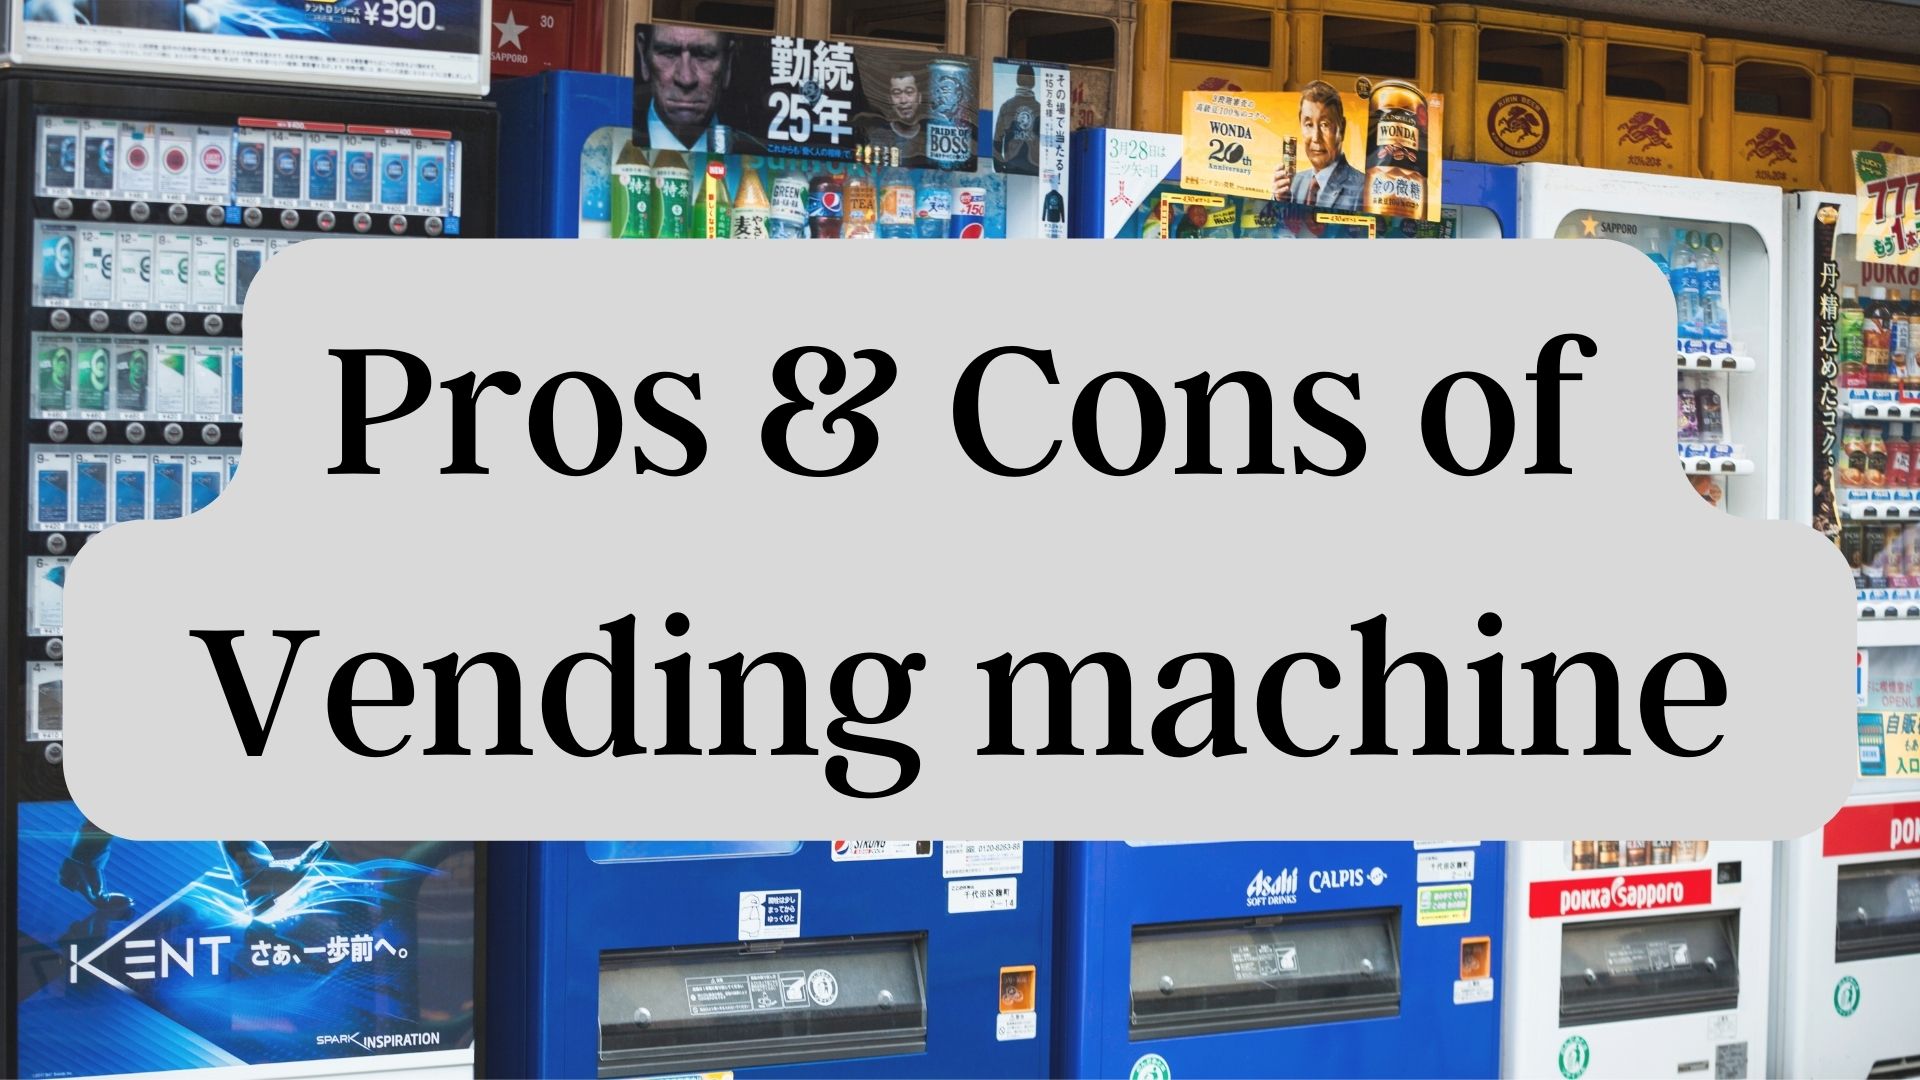 Advantages and disadvantages of vending machine